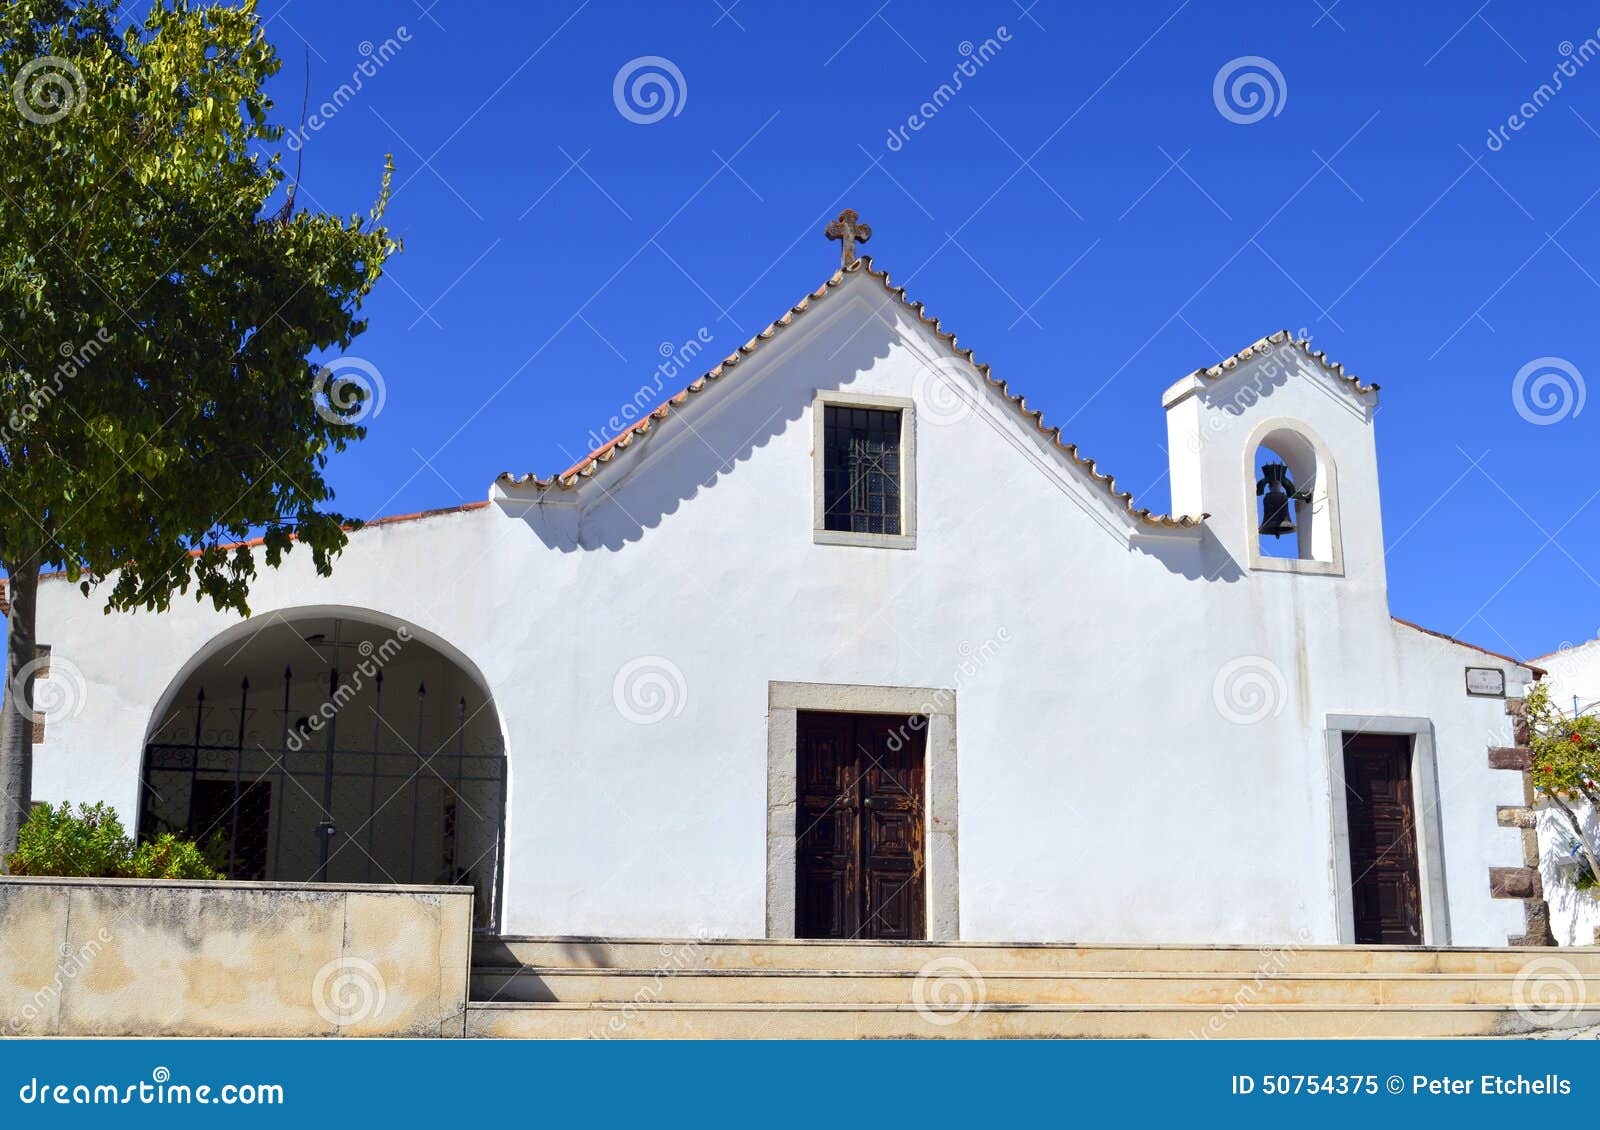 church of salir in the algarve